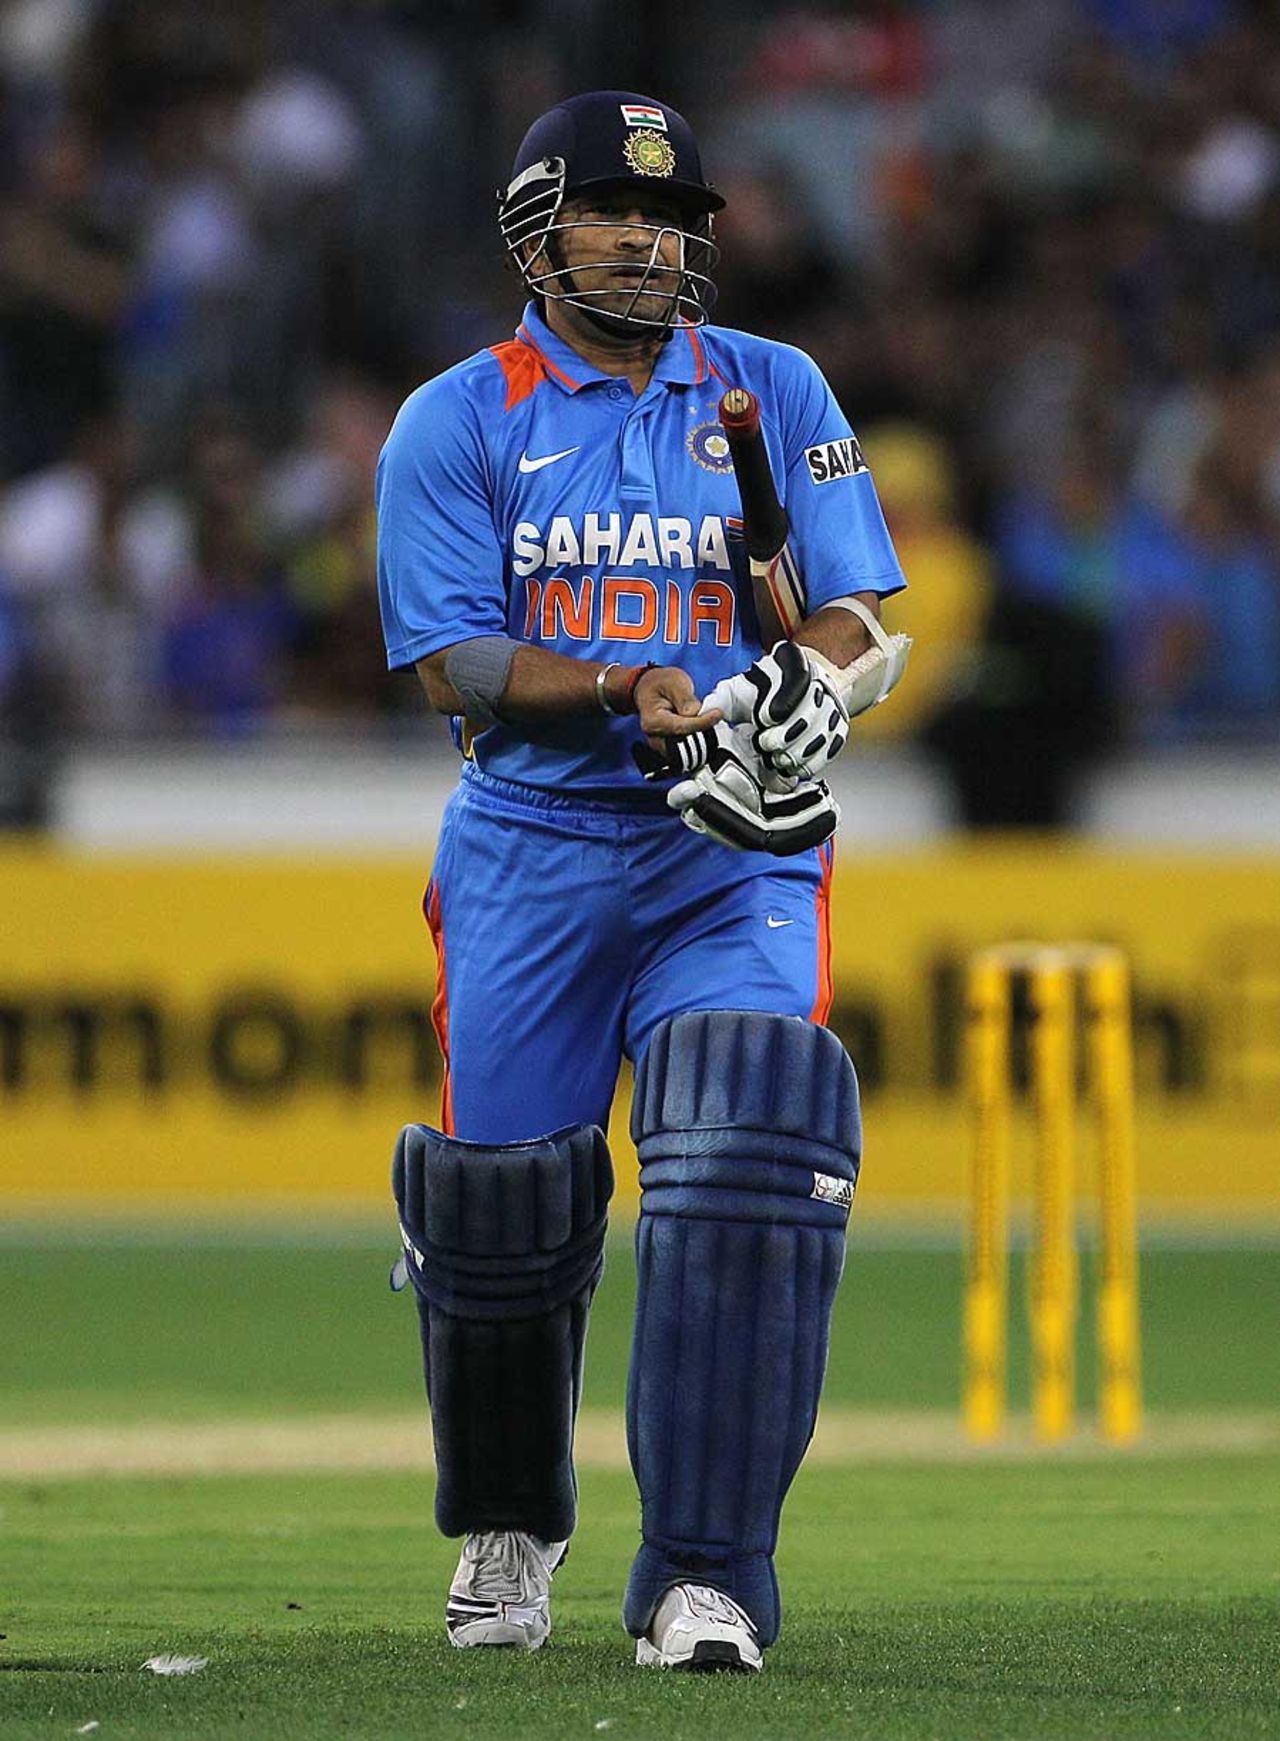 Sachin Tendulkar fell for 2, Australia v India, CB Series, 1st ODI, Melbourne, February 5, 2012